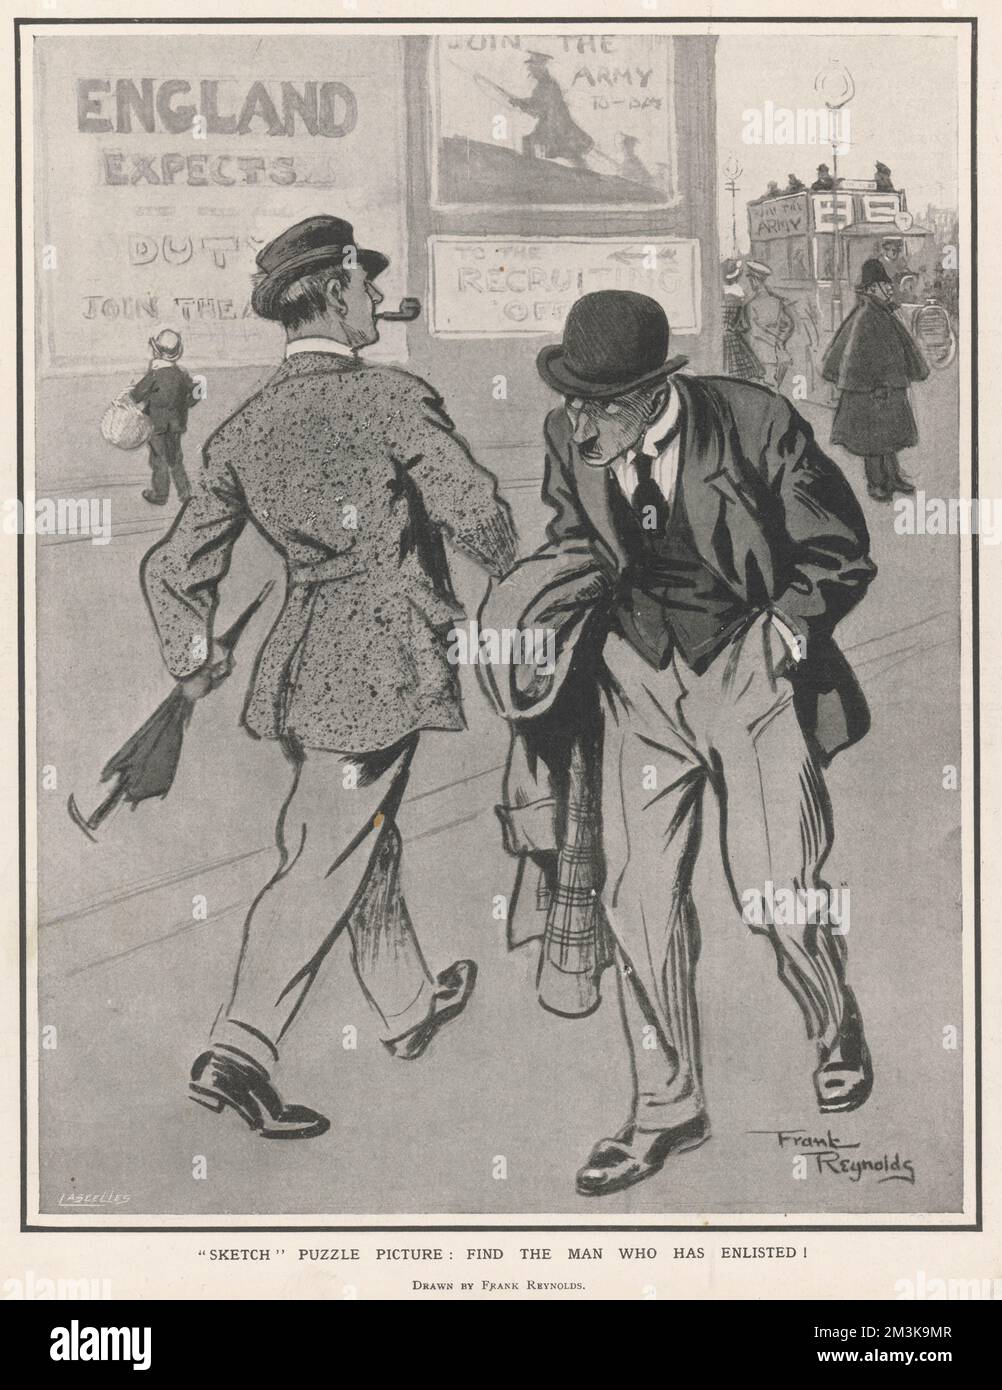 Ein Propagandist-Bild während des Ersten Weltkriegs, das den Stolz und die Zufriedenheit des Mannes, der sich verpflichtet hat, sich anzuschließen, mit der Schande eines Mannes, der es nicht getan hat, vergleicht. Ein Poster mit der Aufschrift „England erwartet“ ist im Hintergrund zu sehen. 1915 Stockfoto